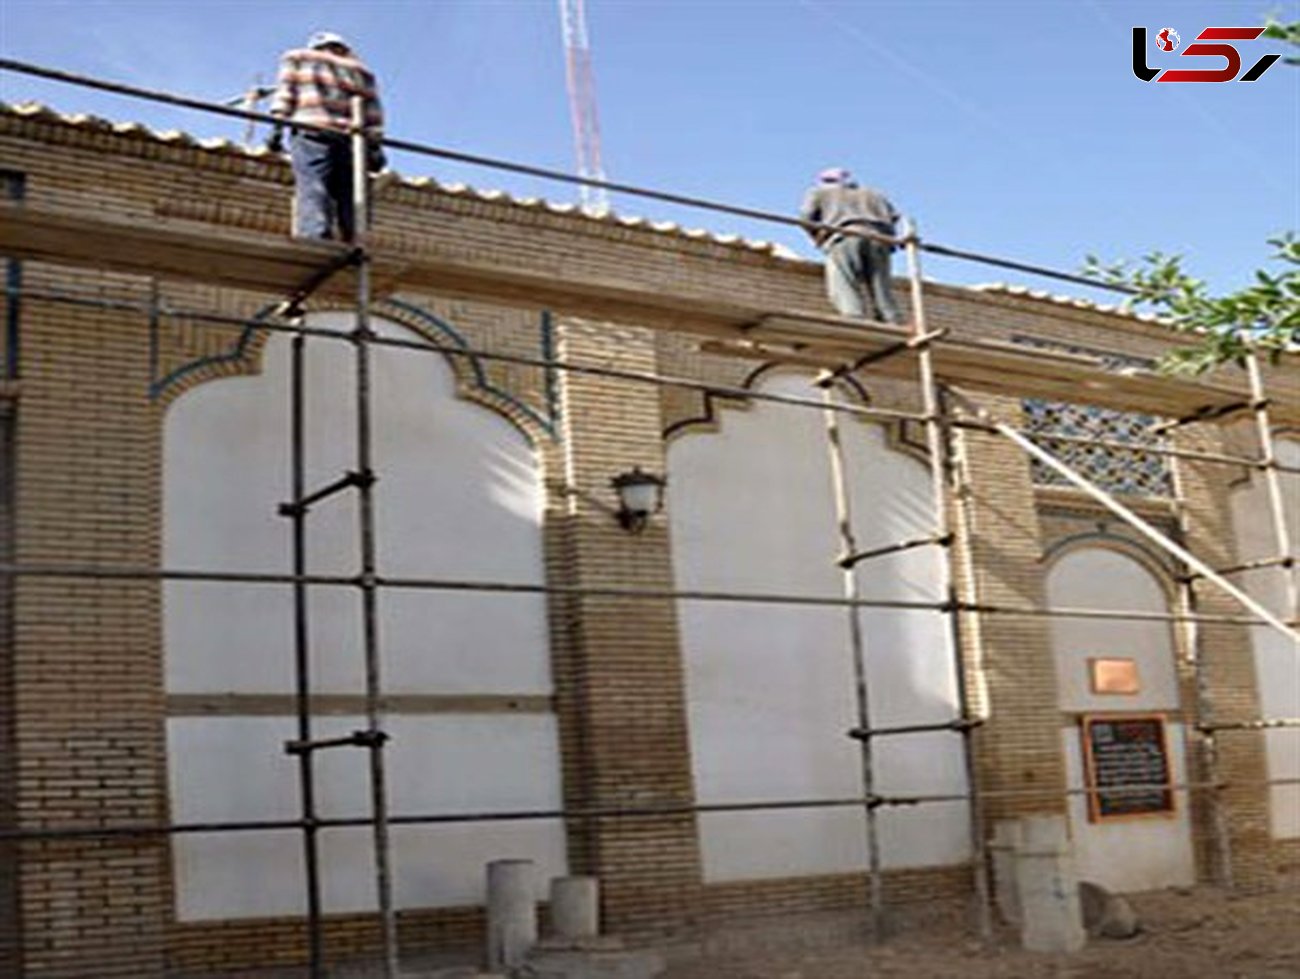 ۴۰ دوره مرمت بناهای تاریخی سالانه در لرستان انجام می شود